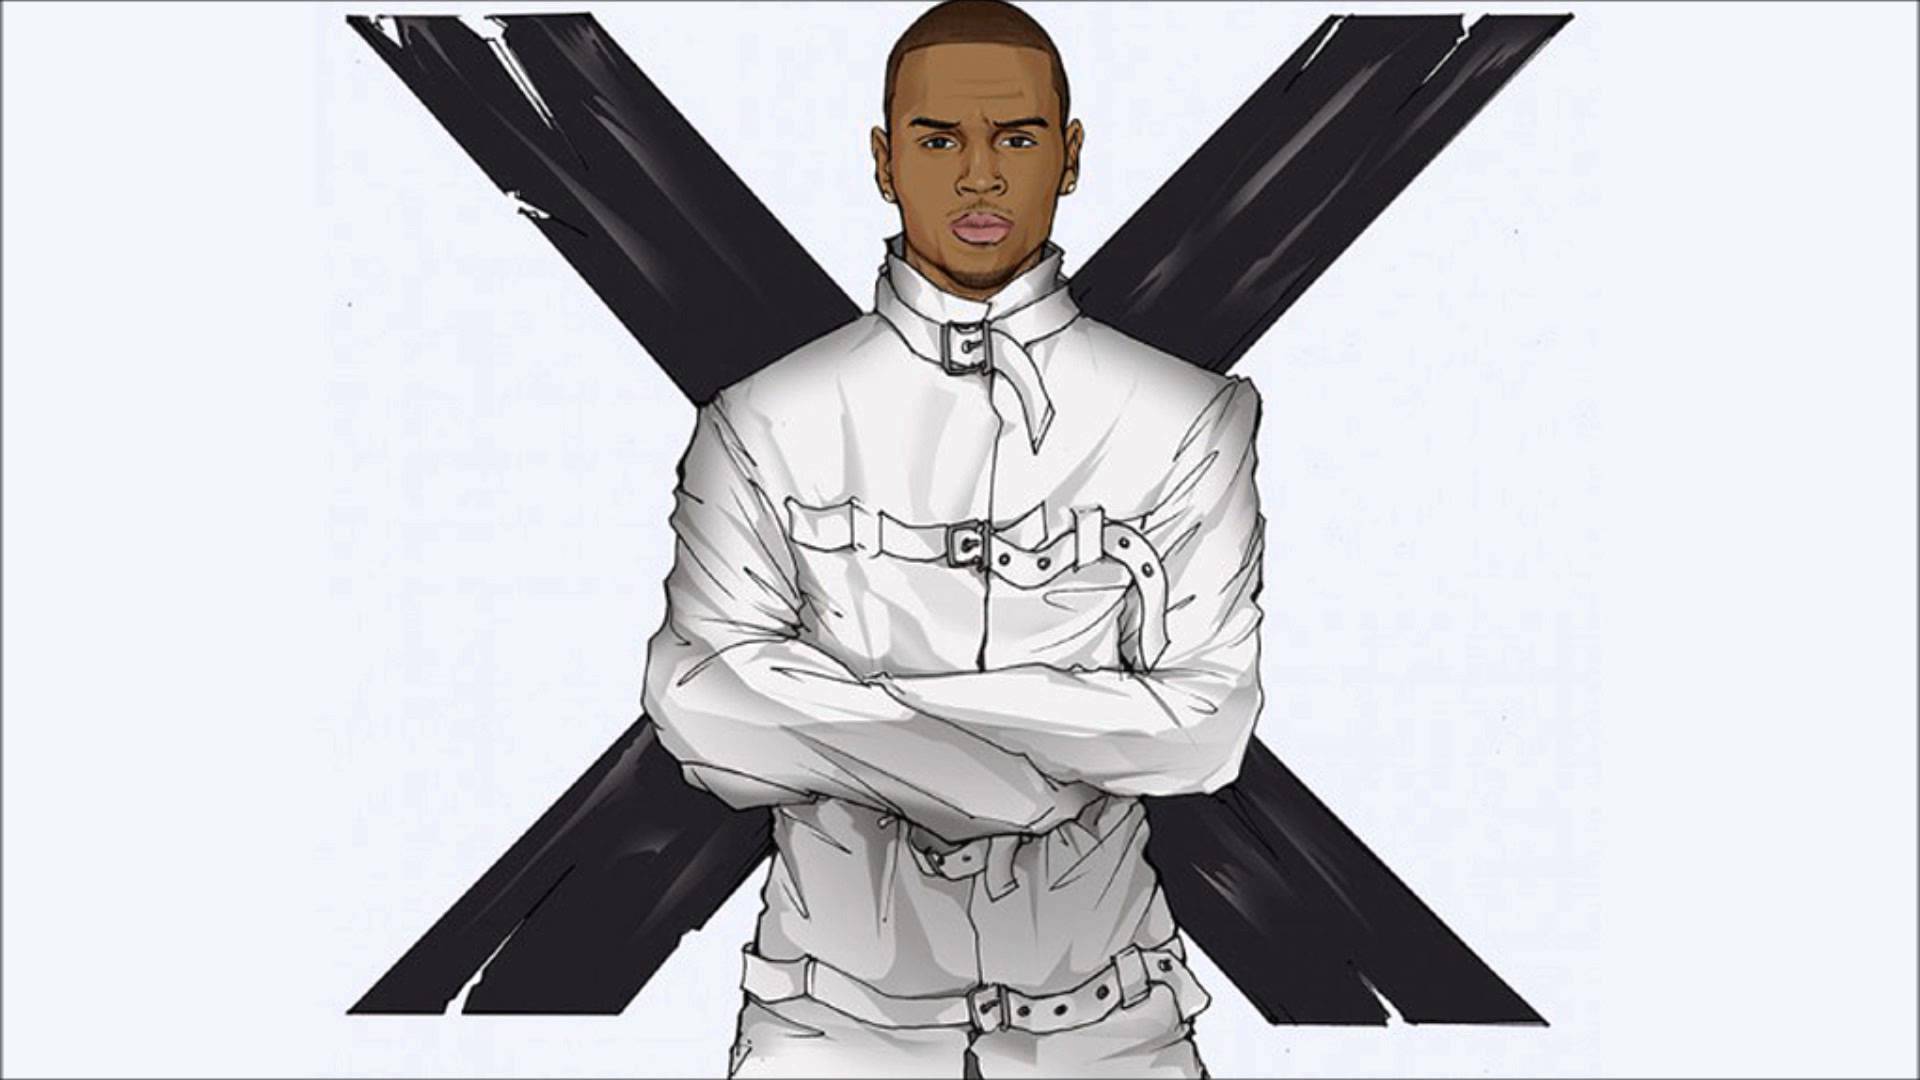 Chris Brown Wallpaper, Dancer, HD Image, X, Music Album, American